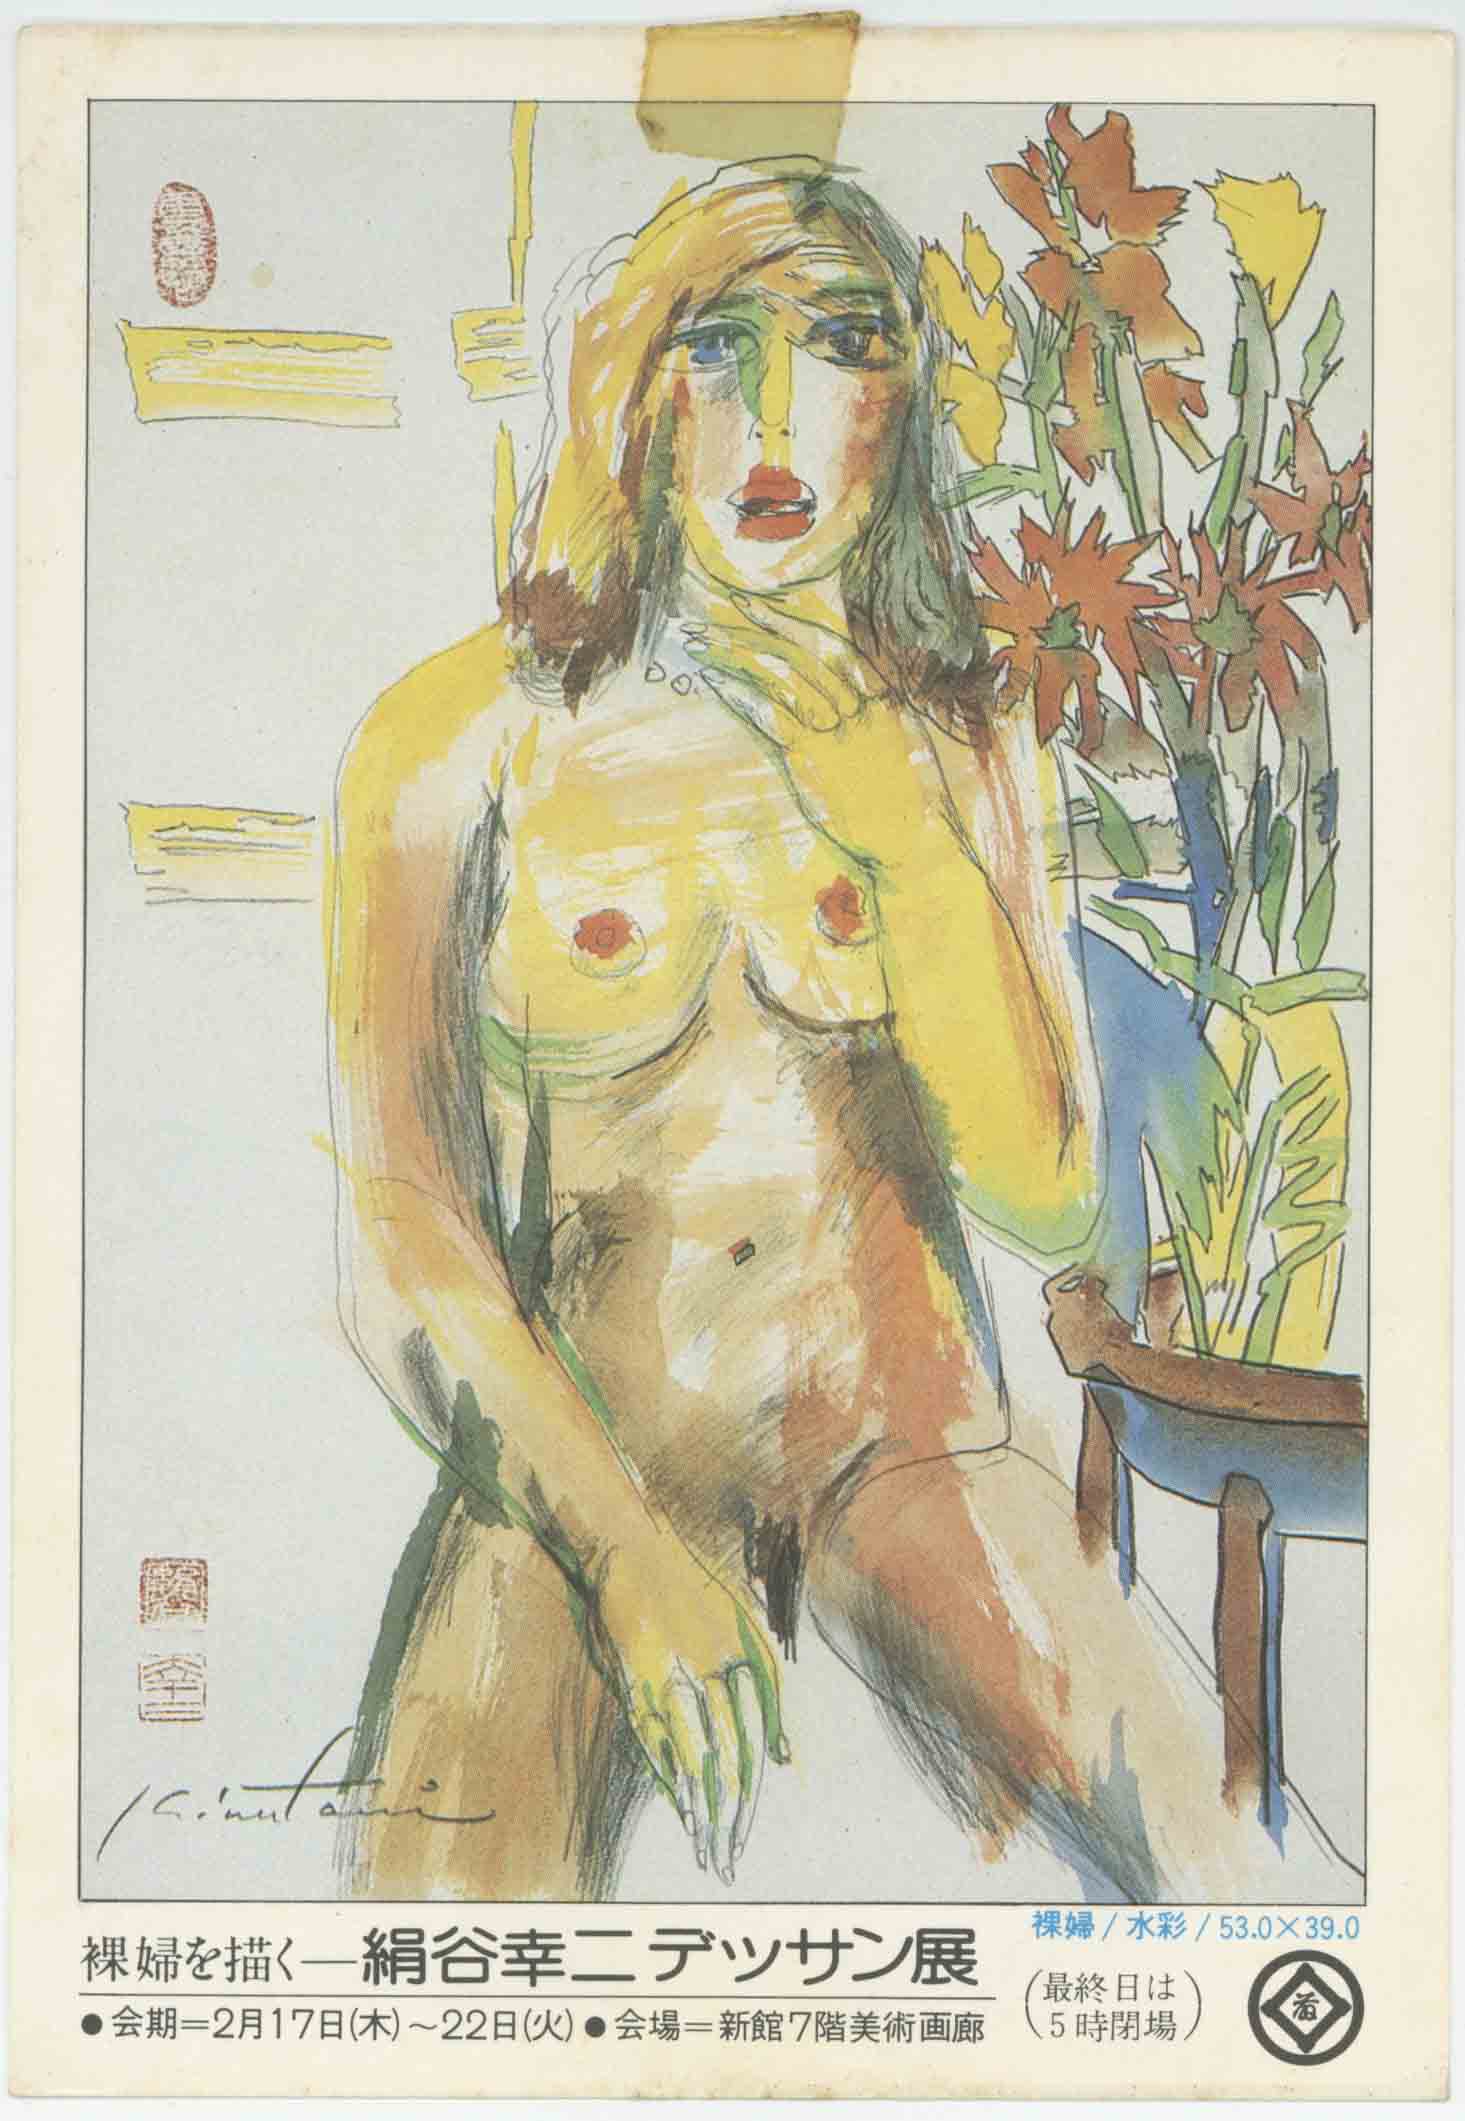 裸婦を描くー絹谷幸二デッサン展